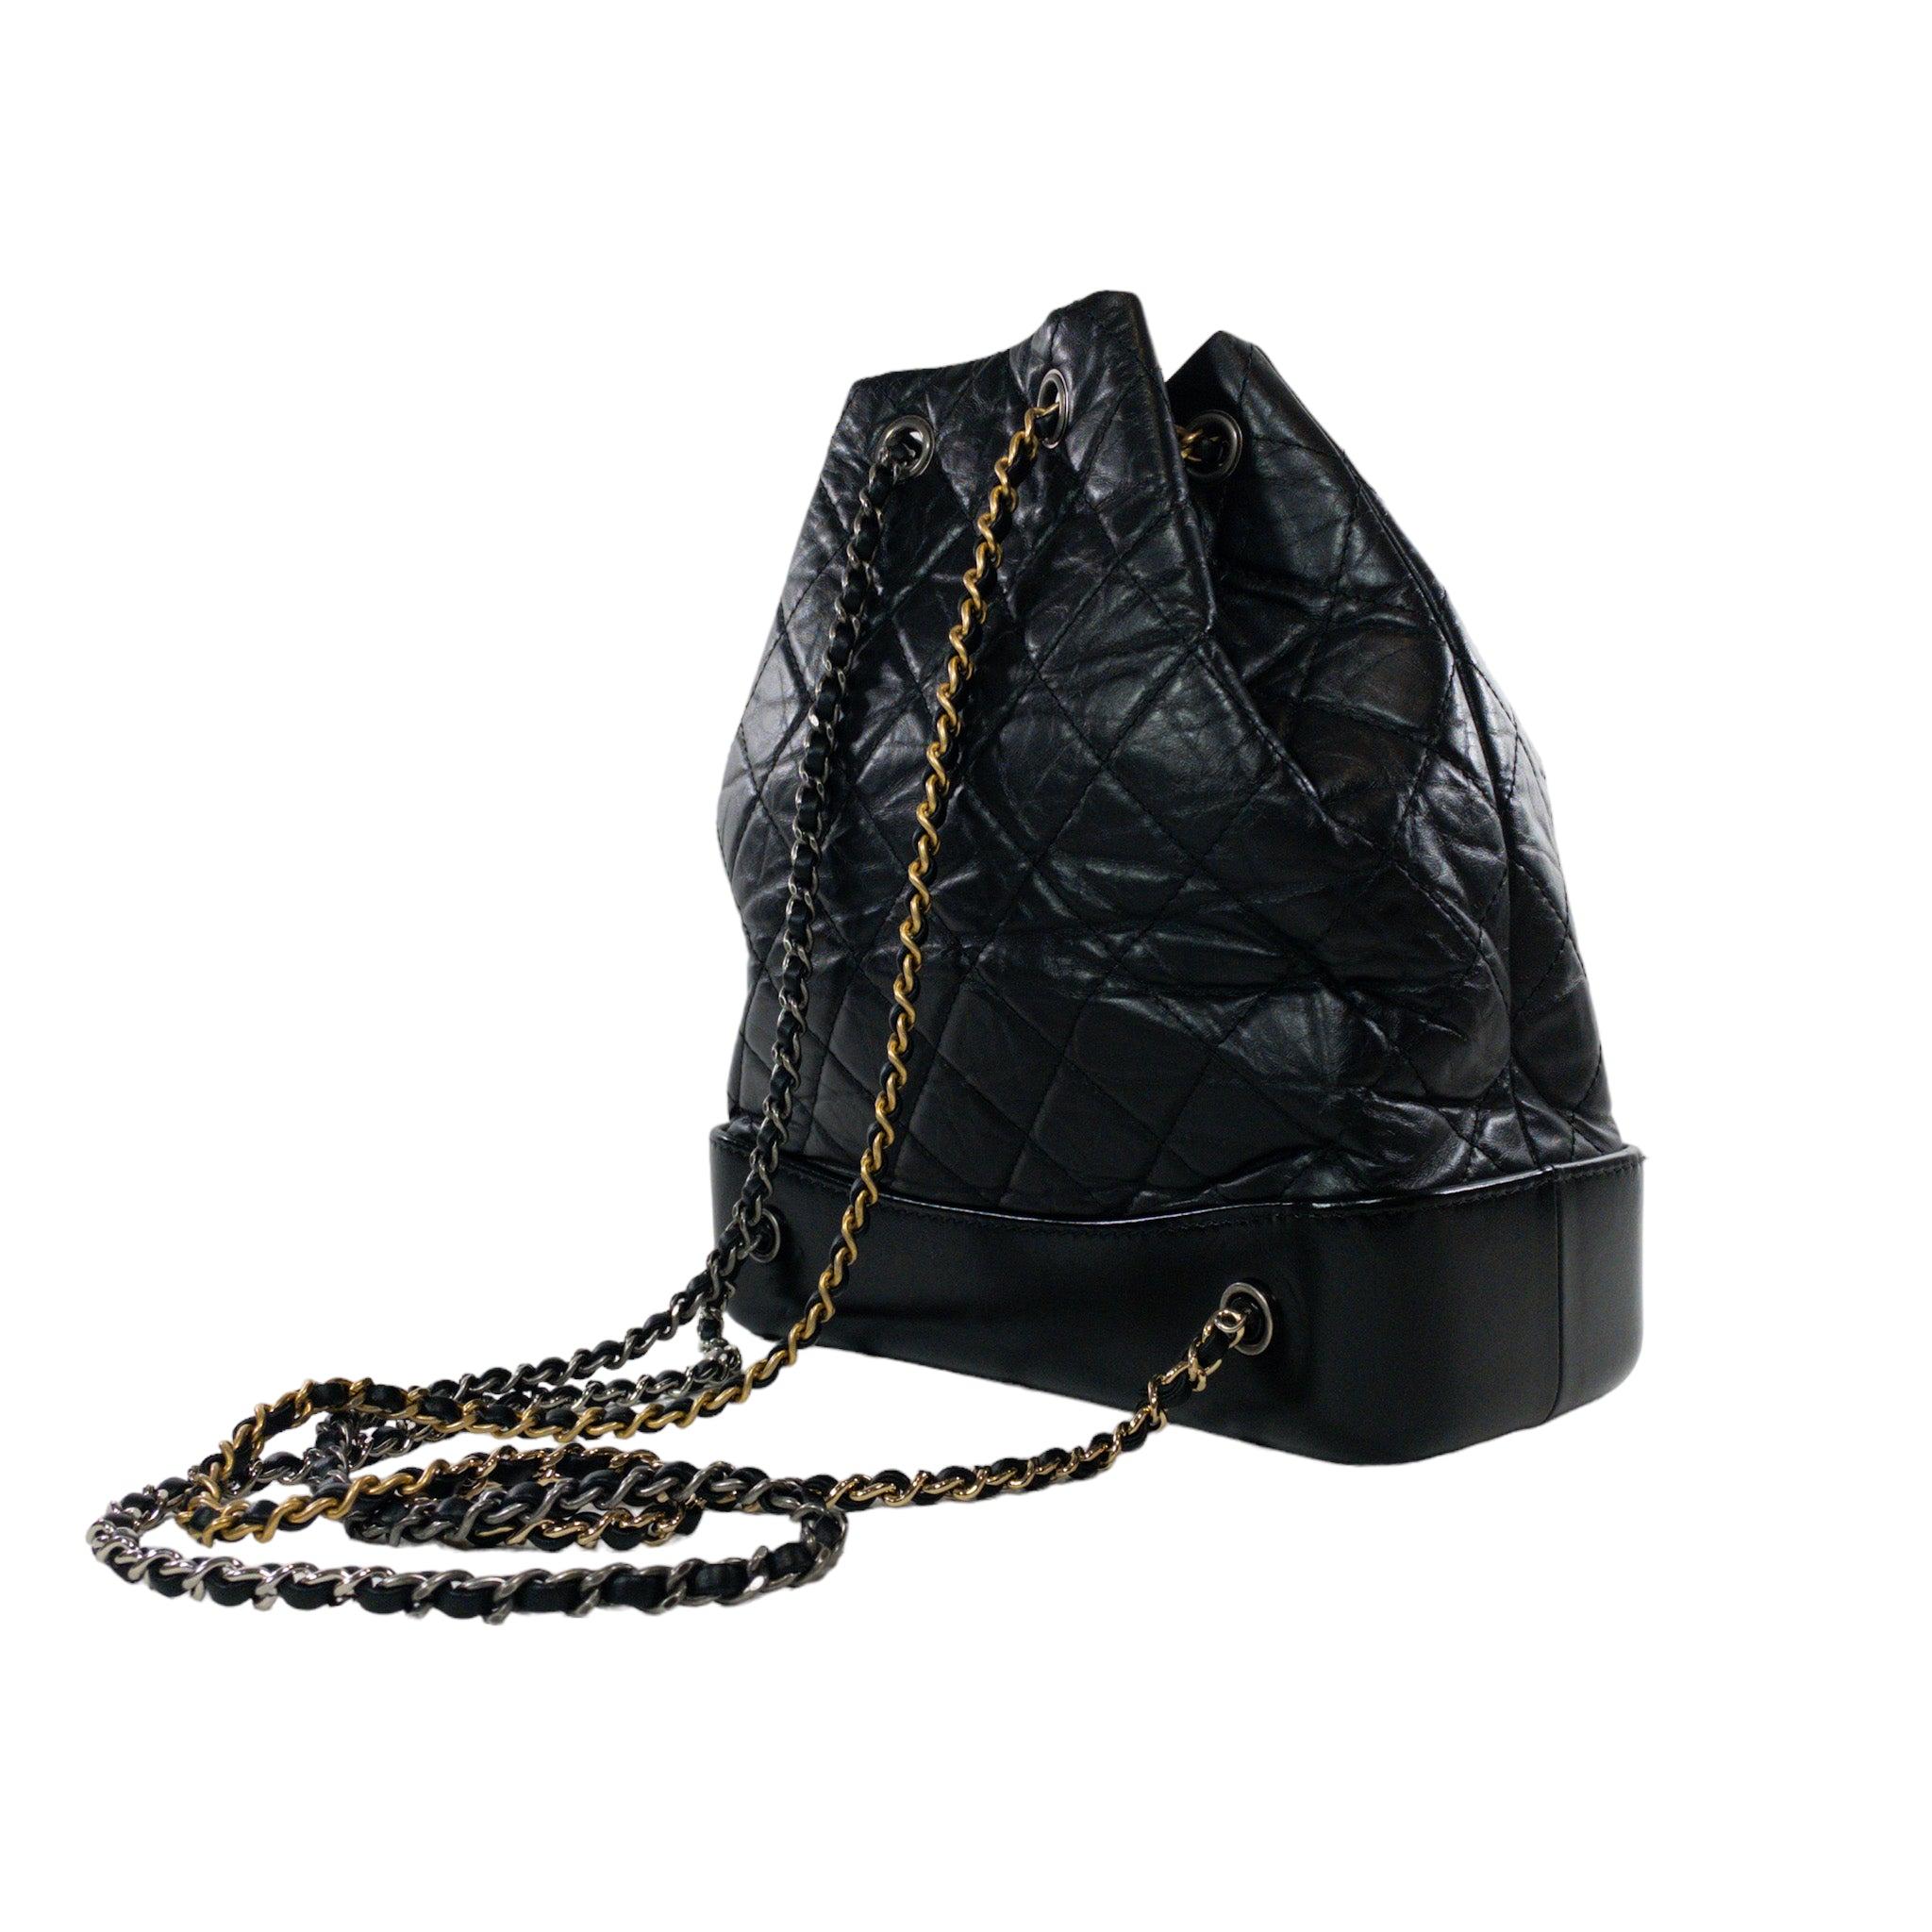 Petit sac à dos Gabrielle noir de Chanel

Ce sac à dos est un authentique petit sac à dos à cordon de Chanel Gabrielle. Cuir matelassé noir avec base structurée émaillée. Chaînes tressées multicolores. Ruthénium CC à l'avant. Doublé de tissu rouge.